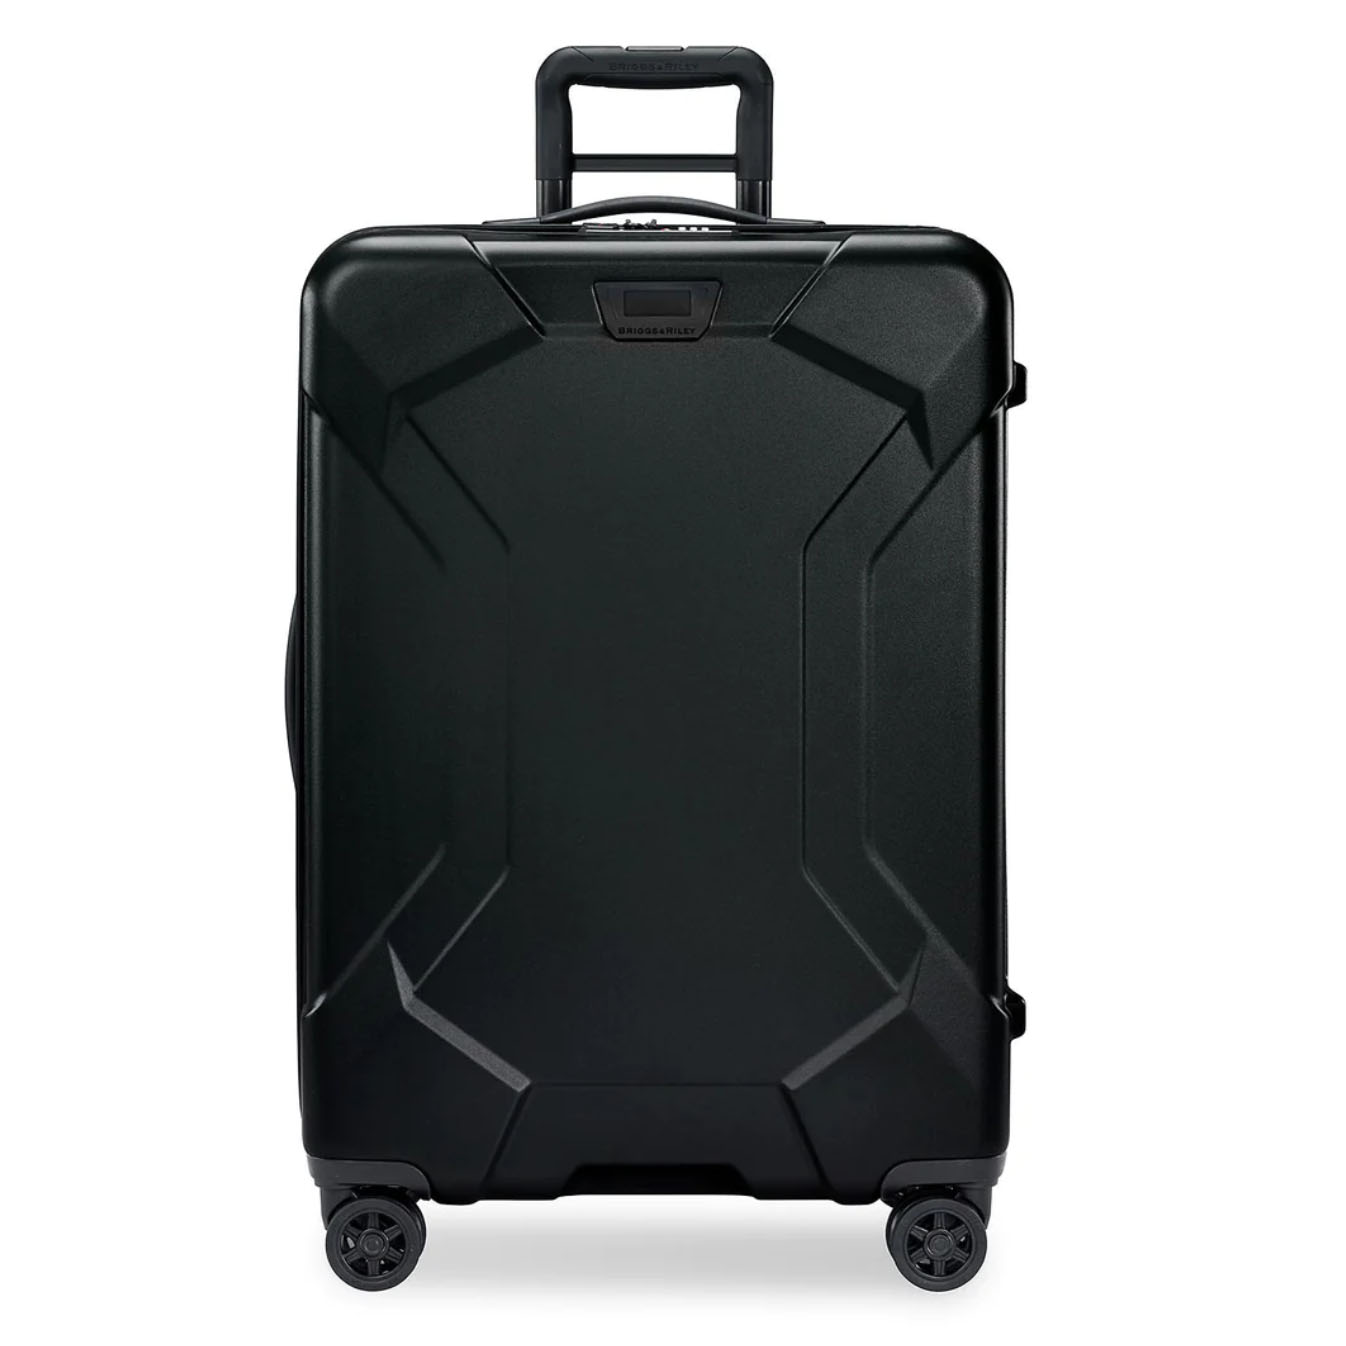 Black hardside luggage